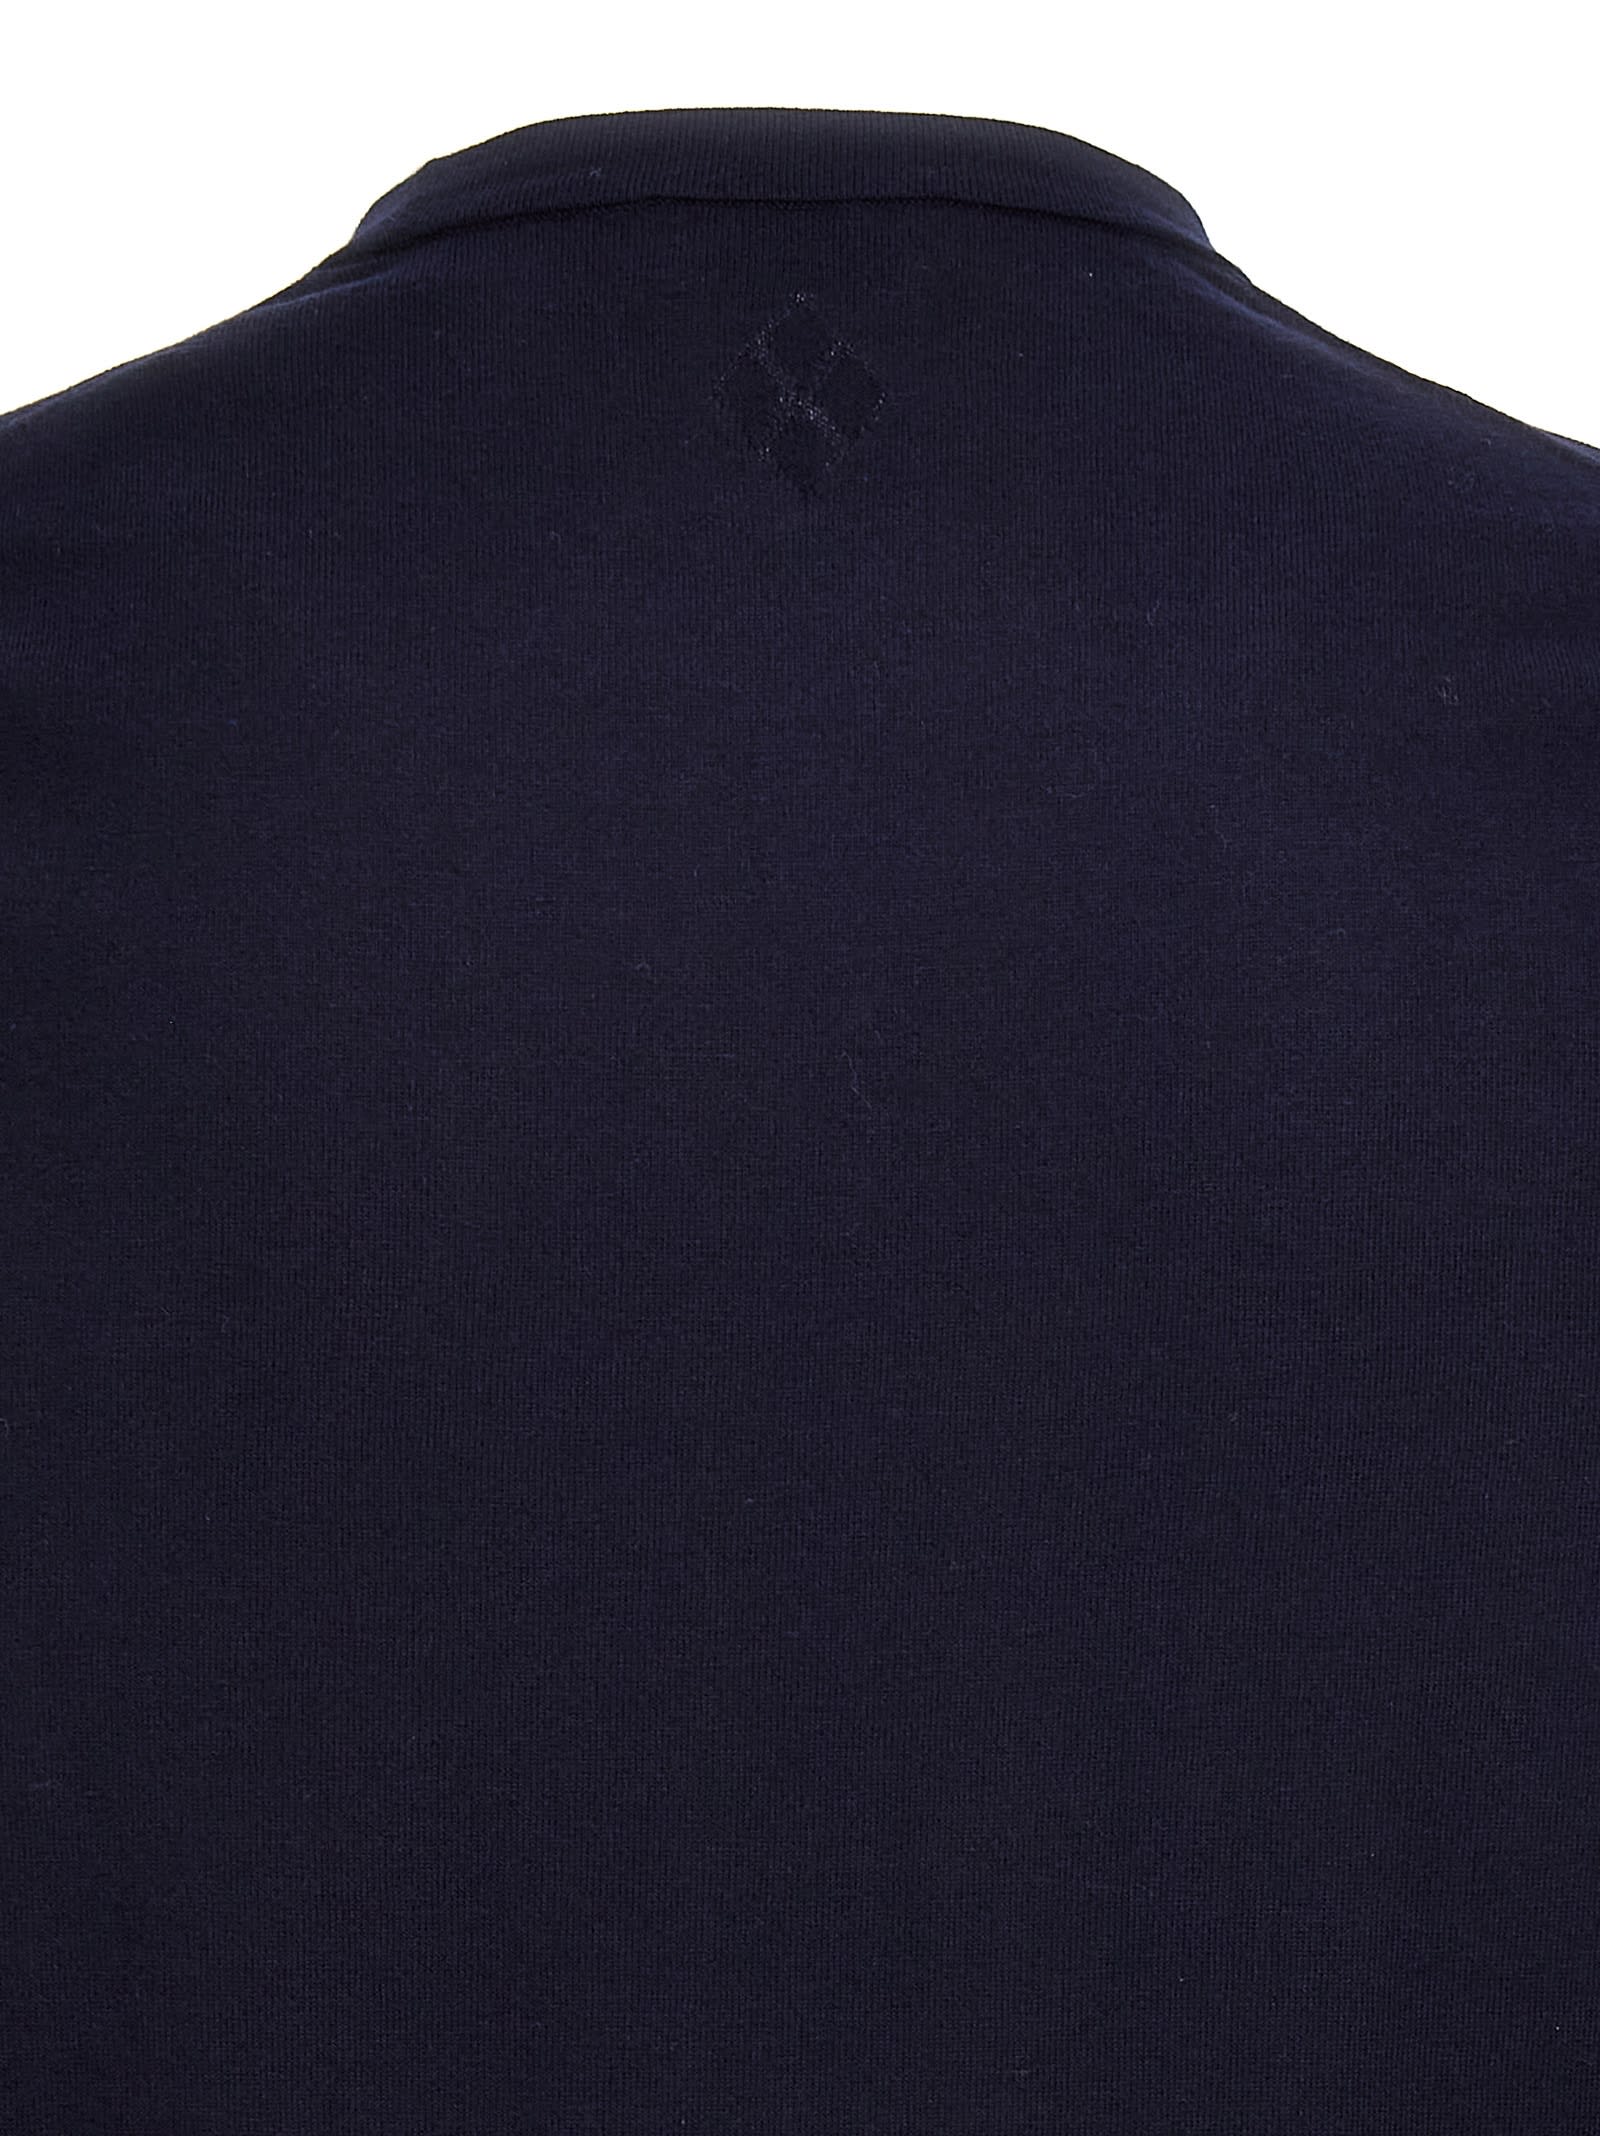 Shop Ballantyne Cotton Sweater In Blue